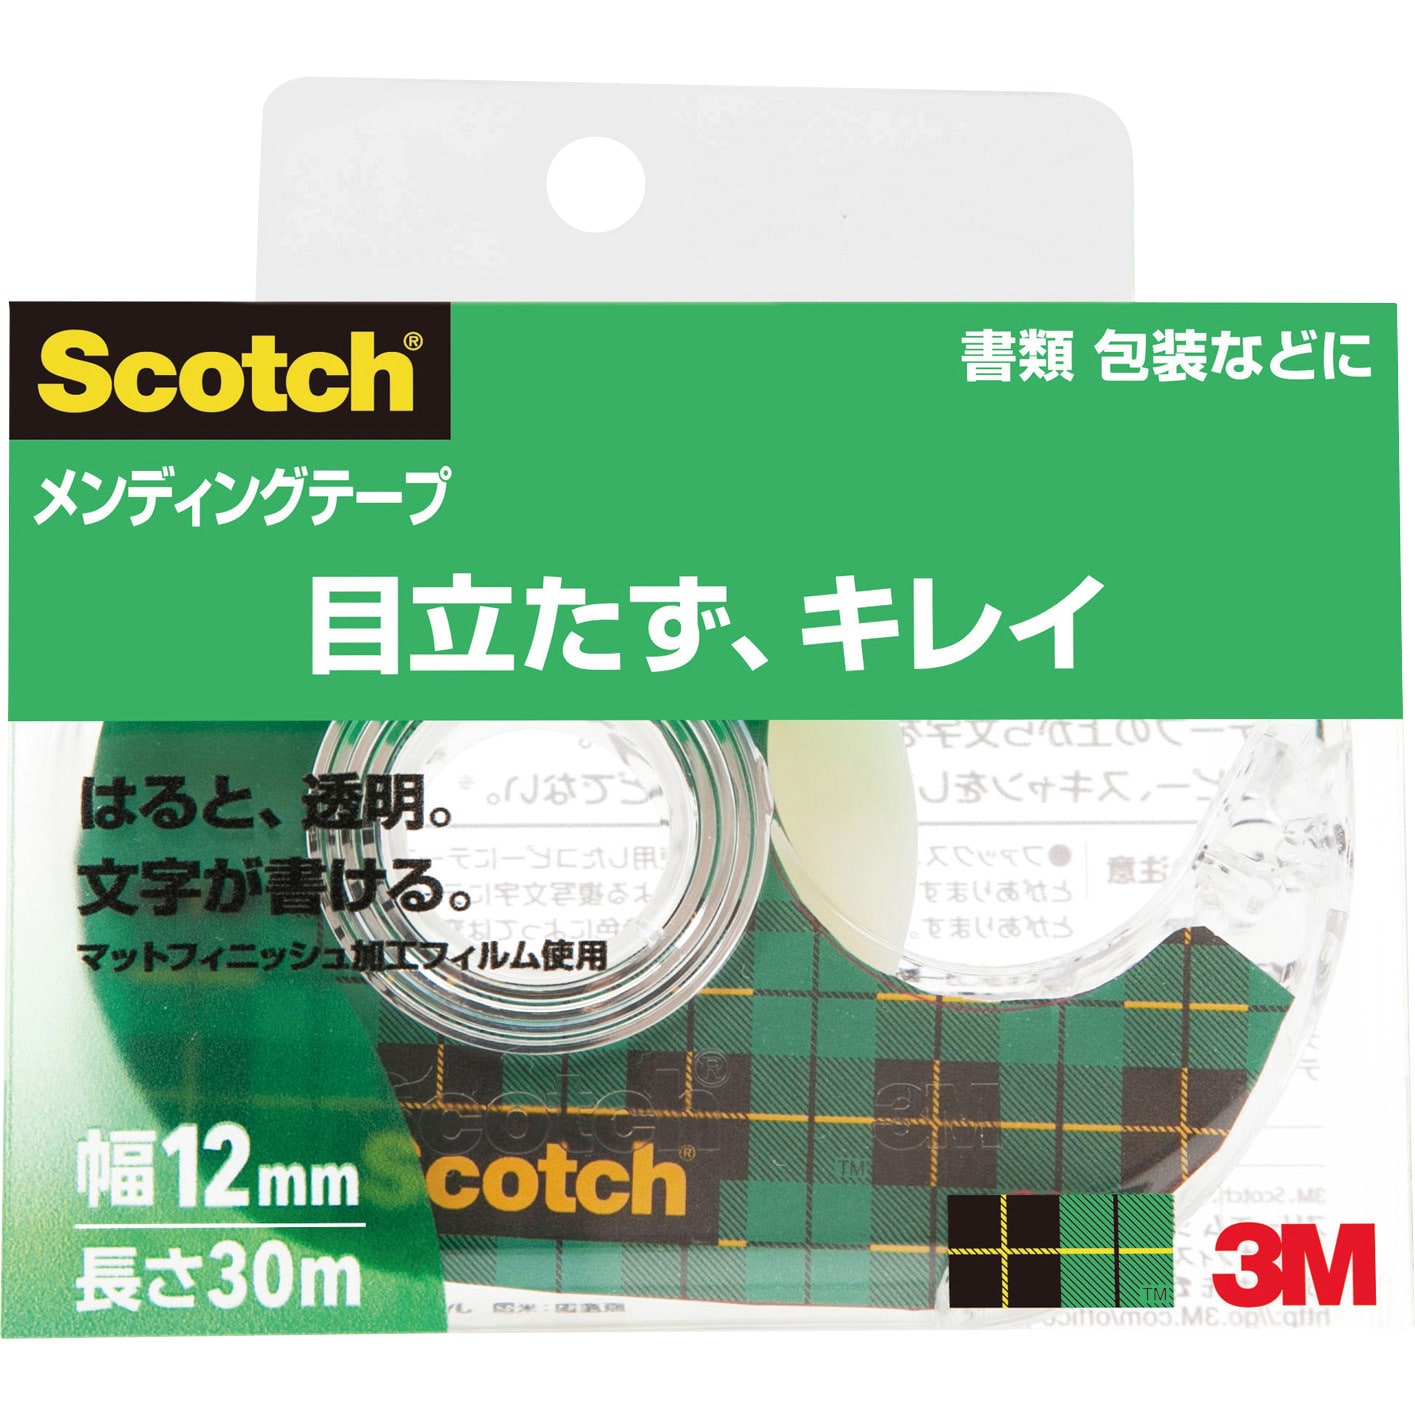 【新品】【10個セット】 3M Scotch スコッチ メンディングテープ 12mm ディスペンサー付 3M-810-1-12DX10